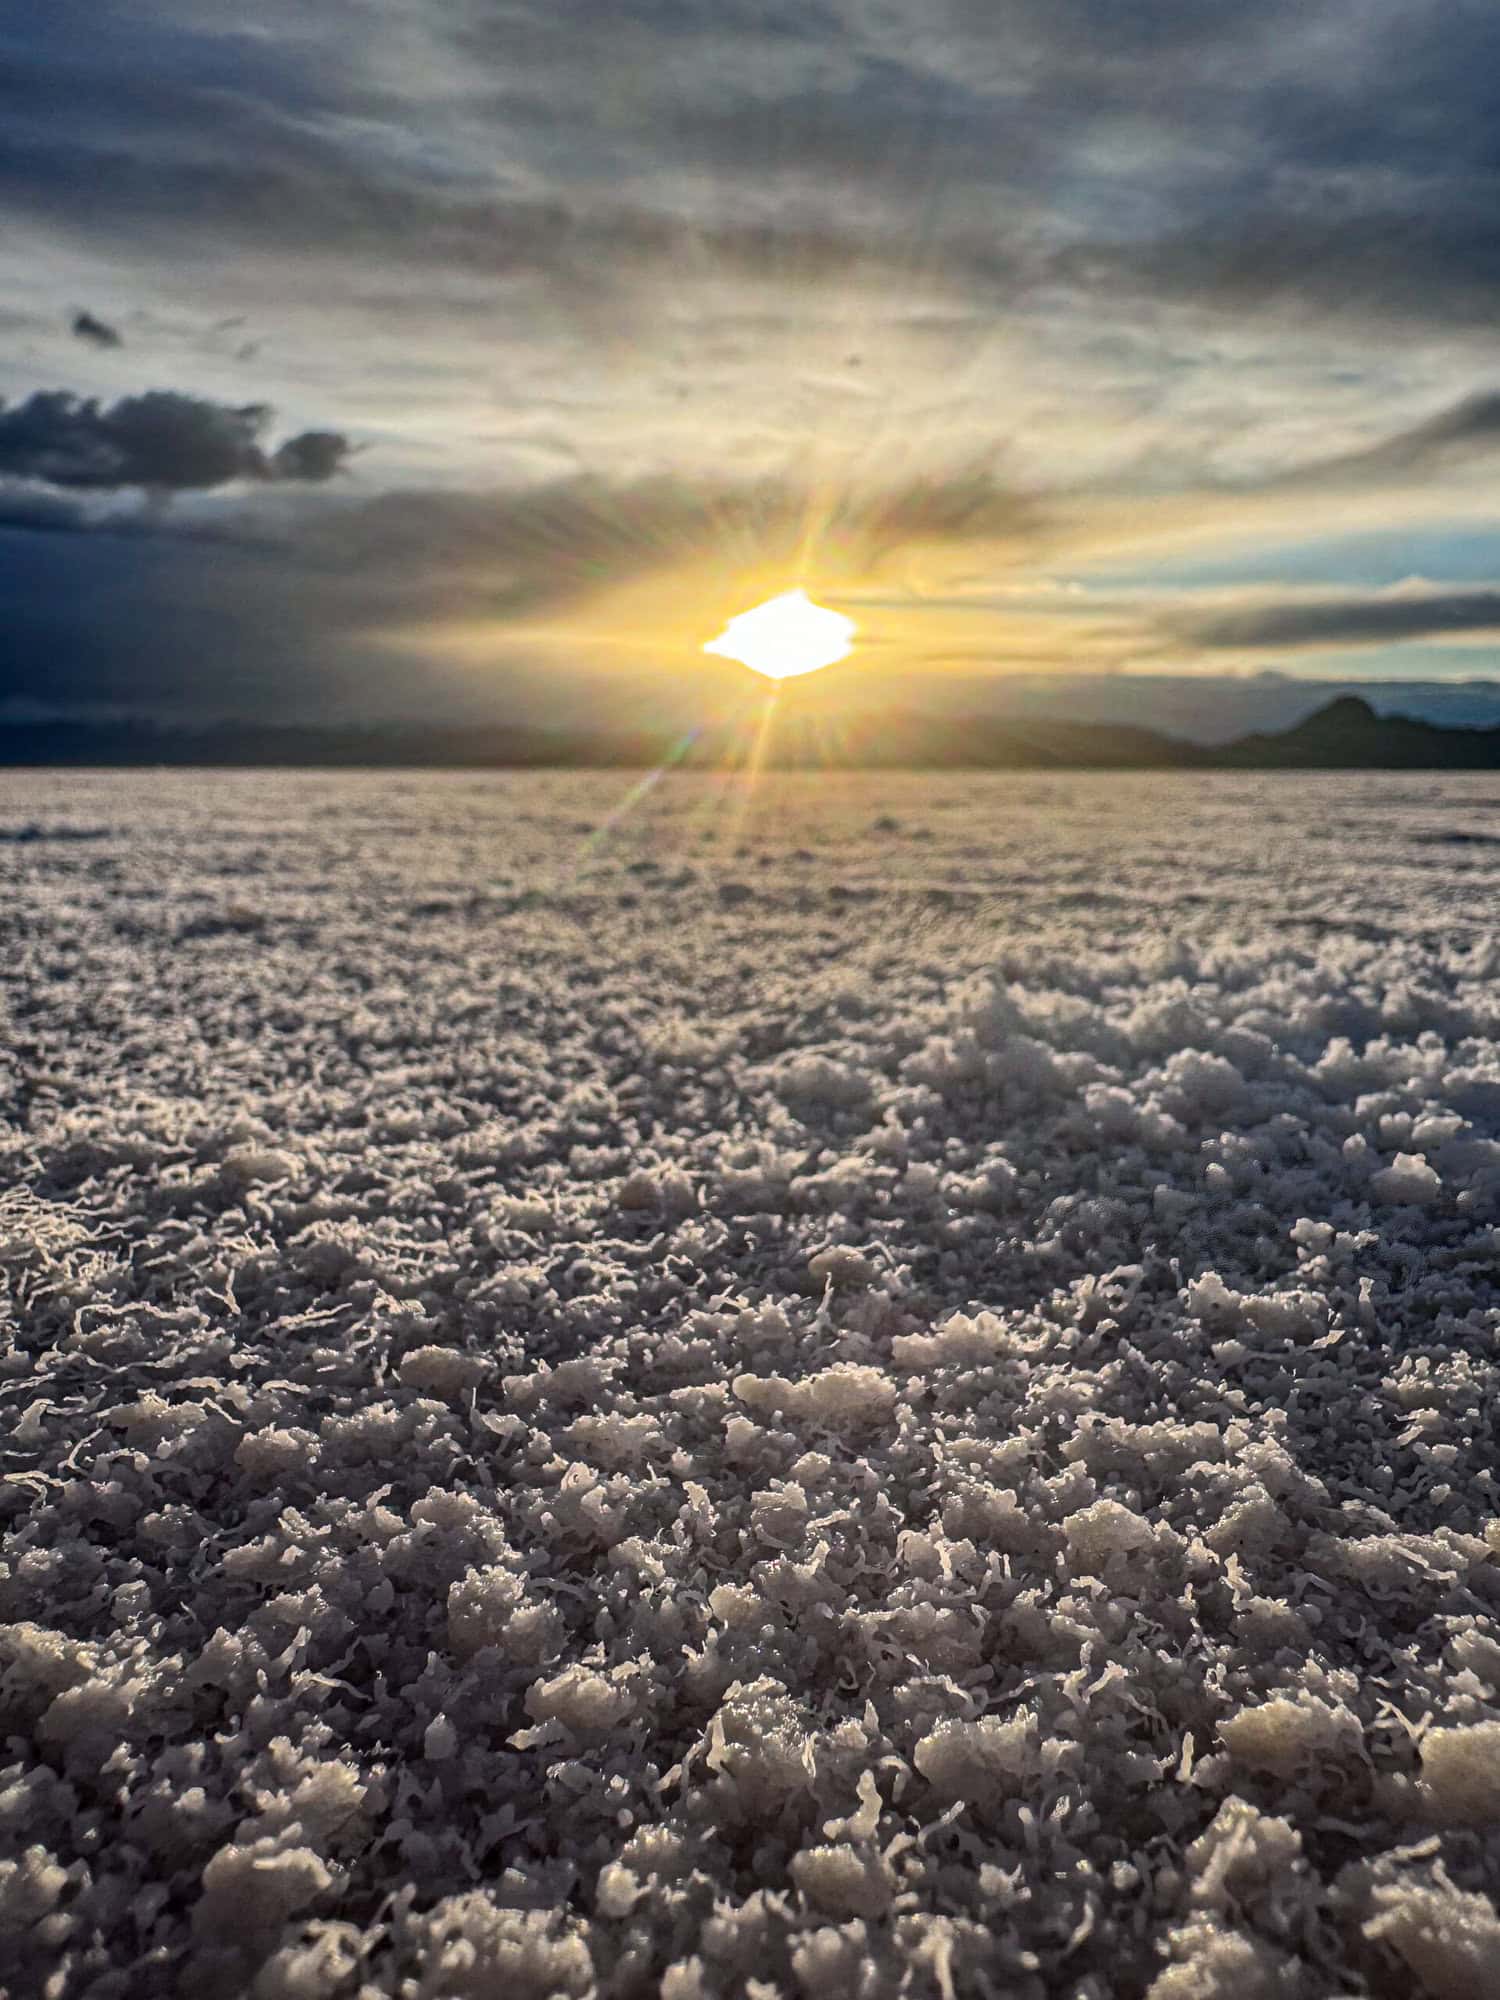 Utahs Bonneville Salt Flats